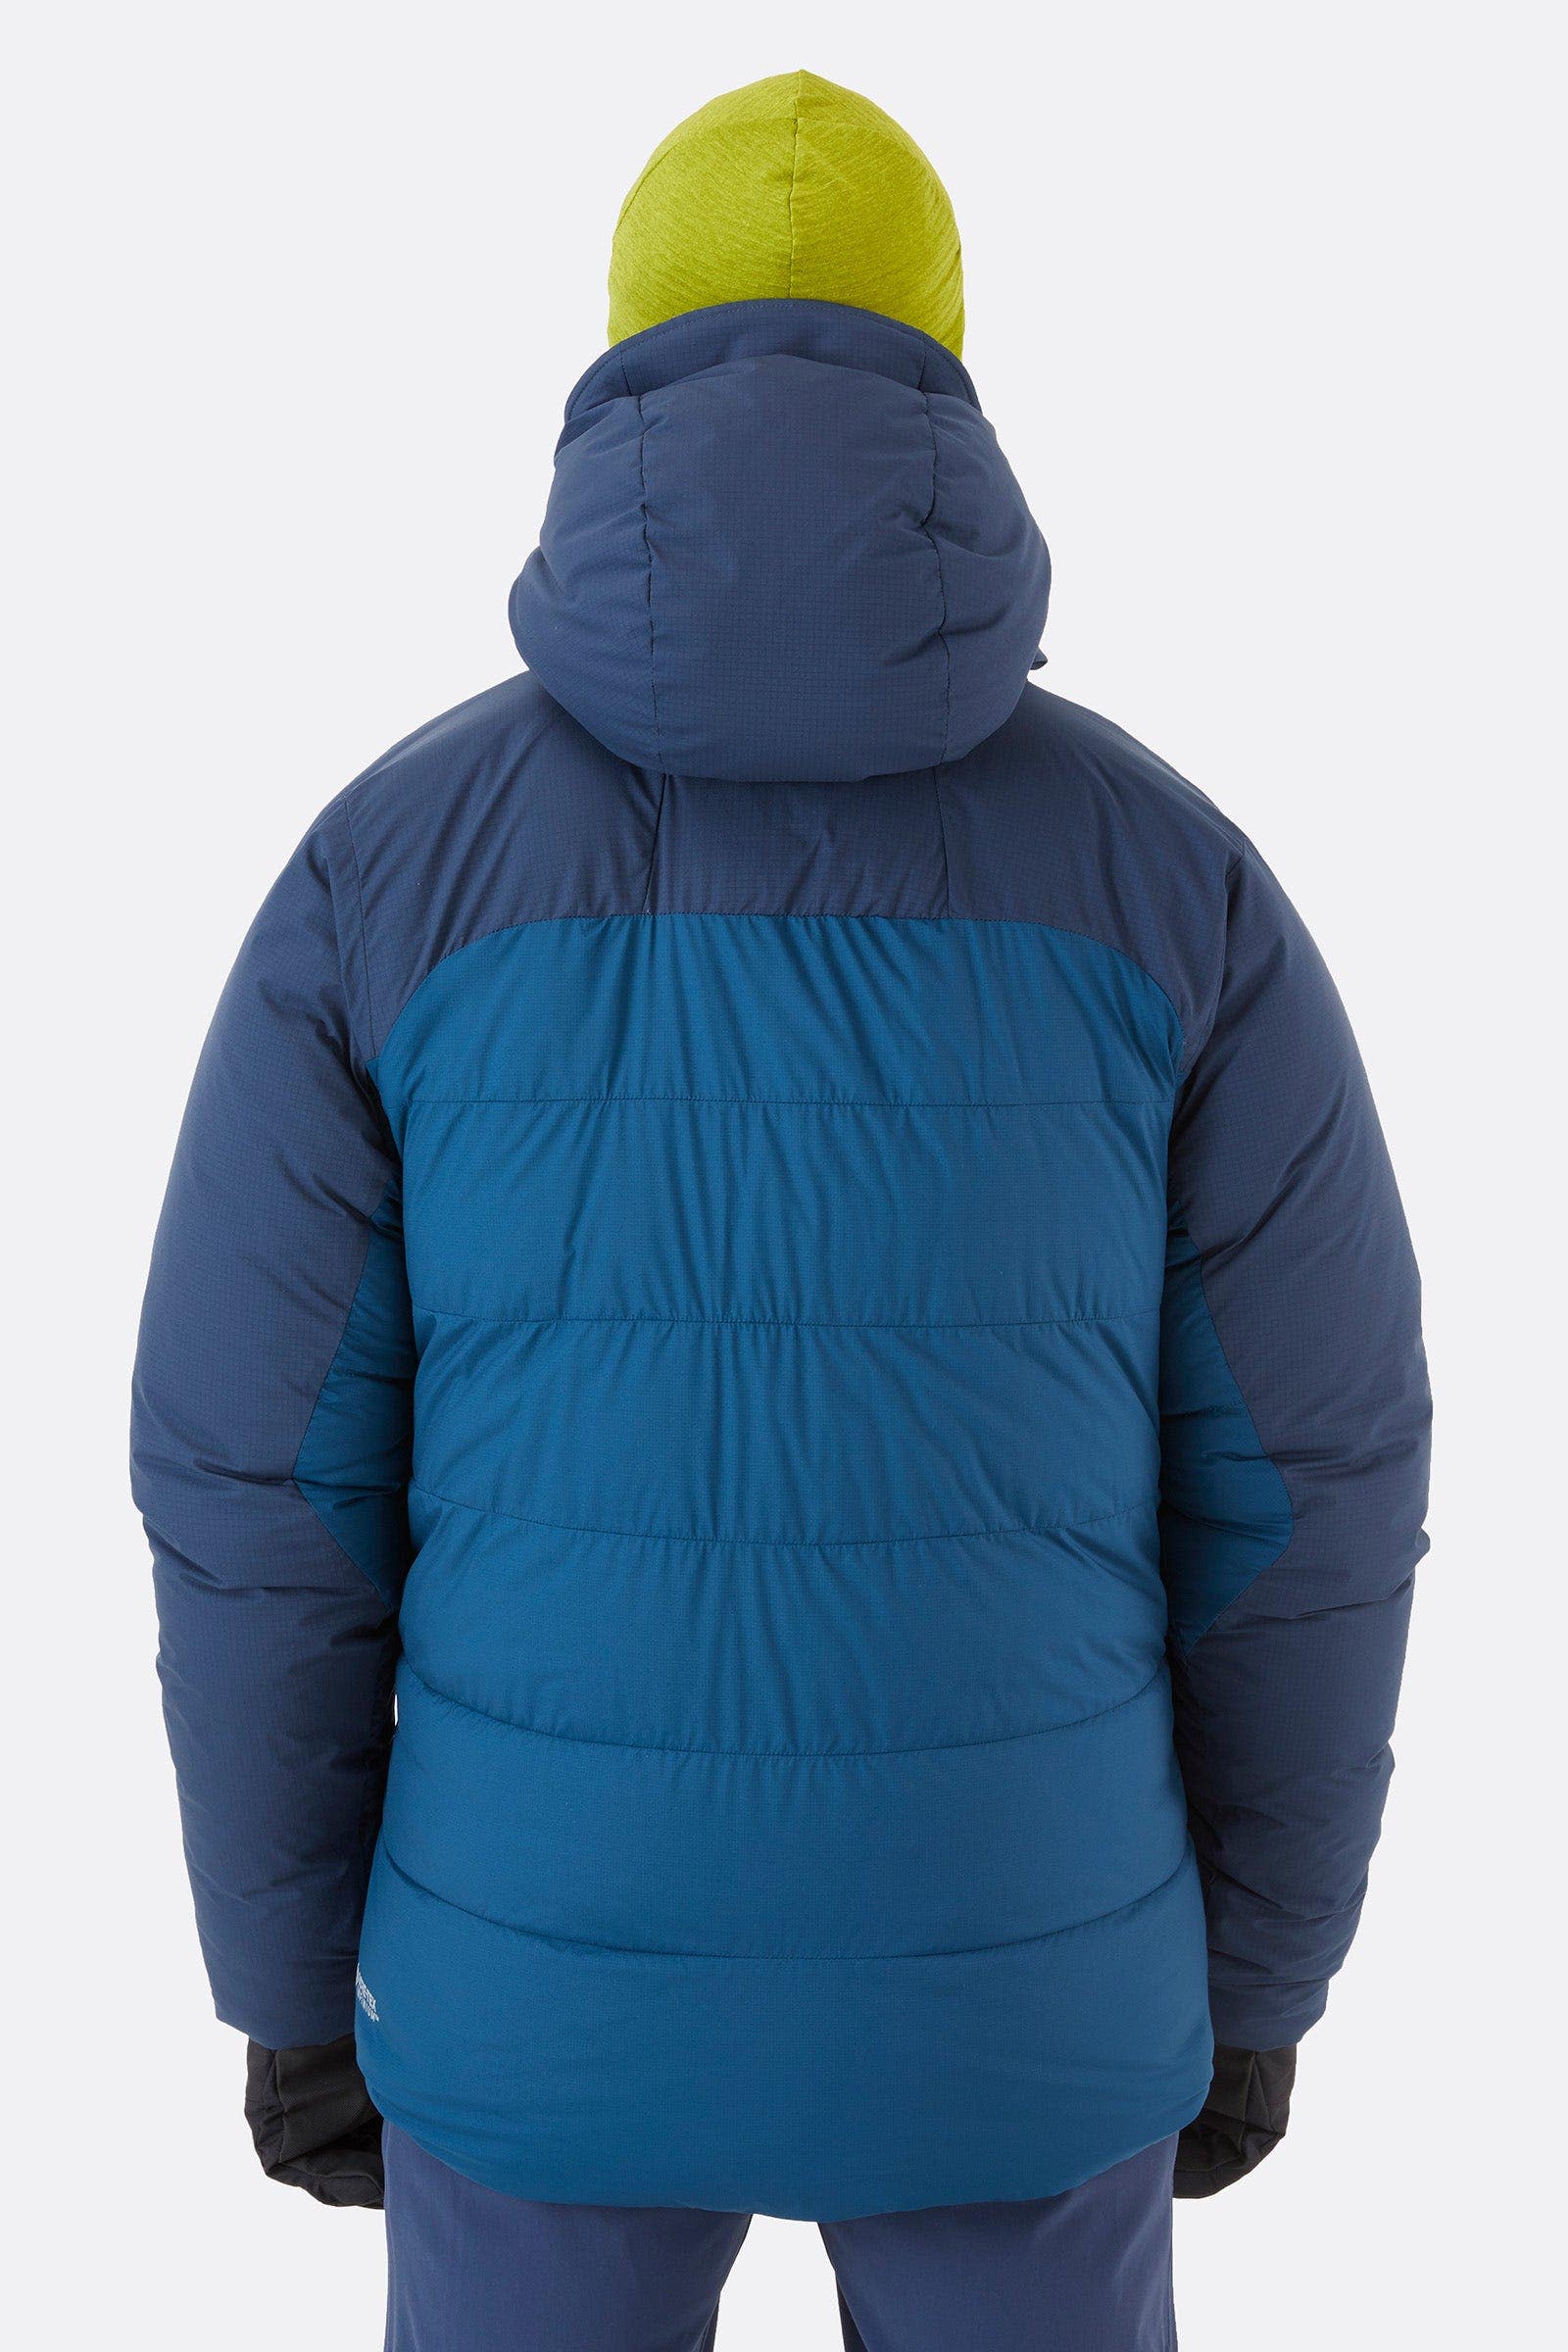 Rab ダウンinfinity jacket ラブ GORE-TEX Lサイズ ダウンジャケット 期間限定特別価格